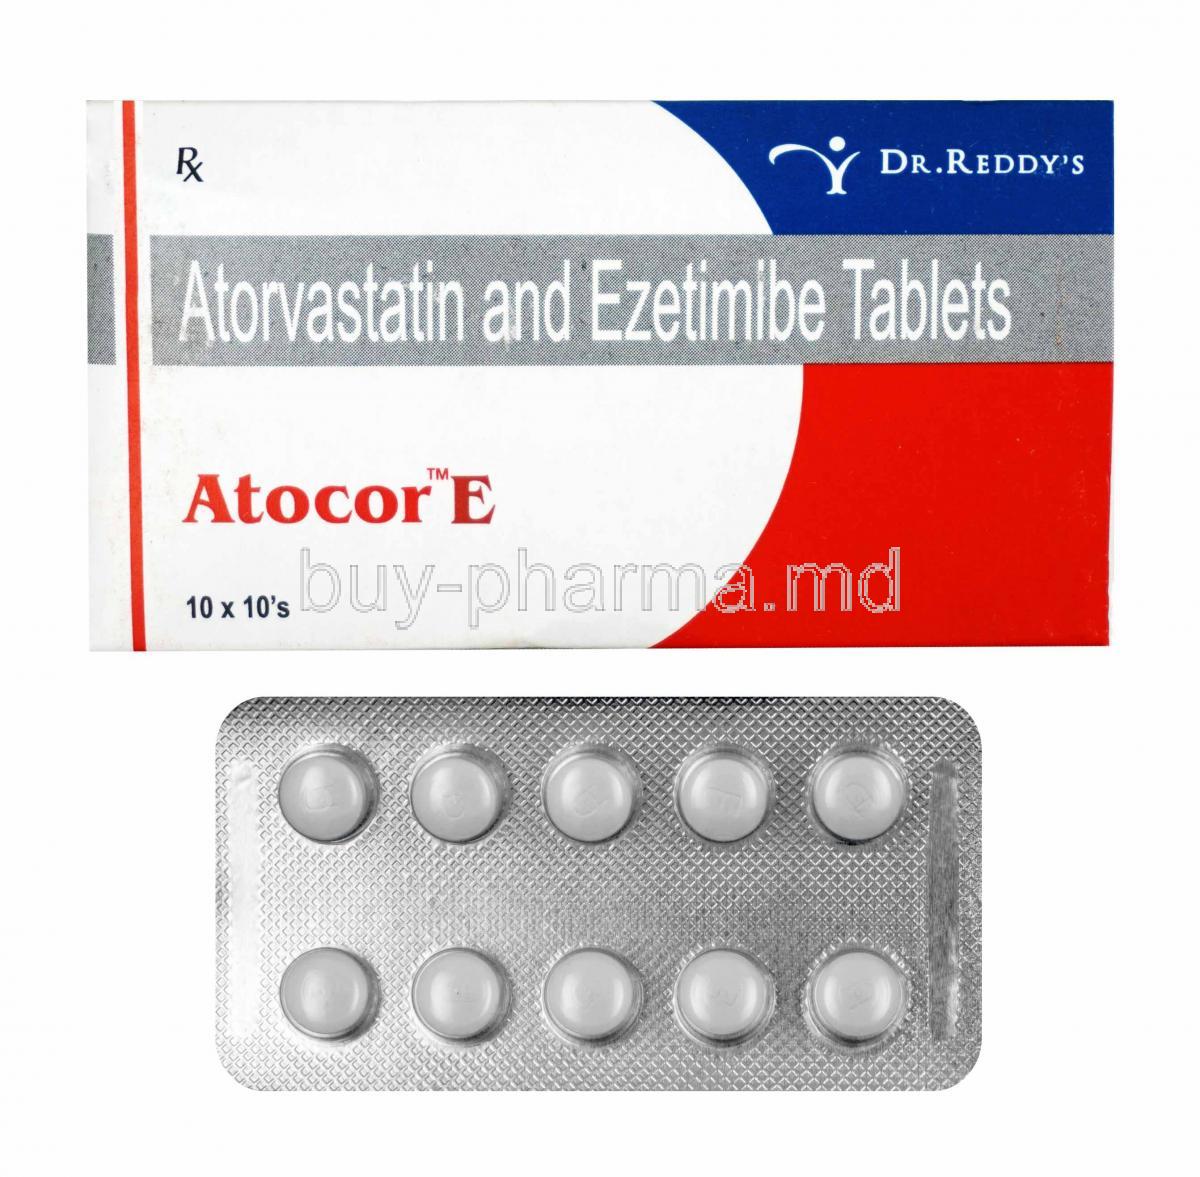 Atocor E, Atorvastatin and Ezetimibe box and tablets